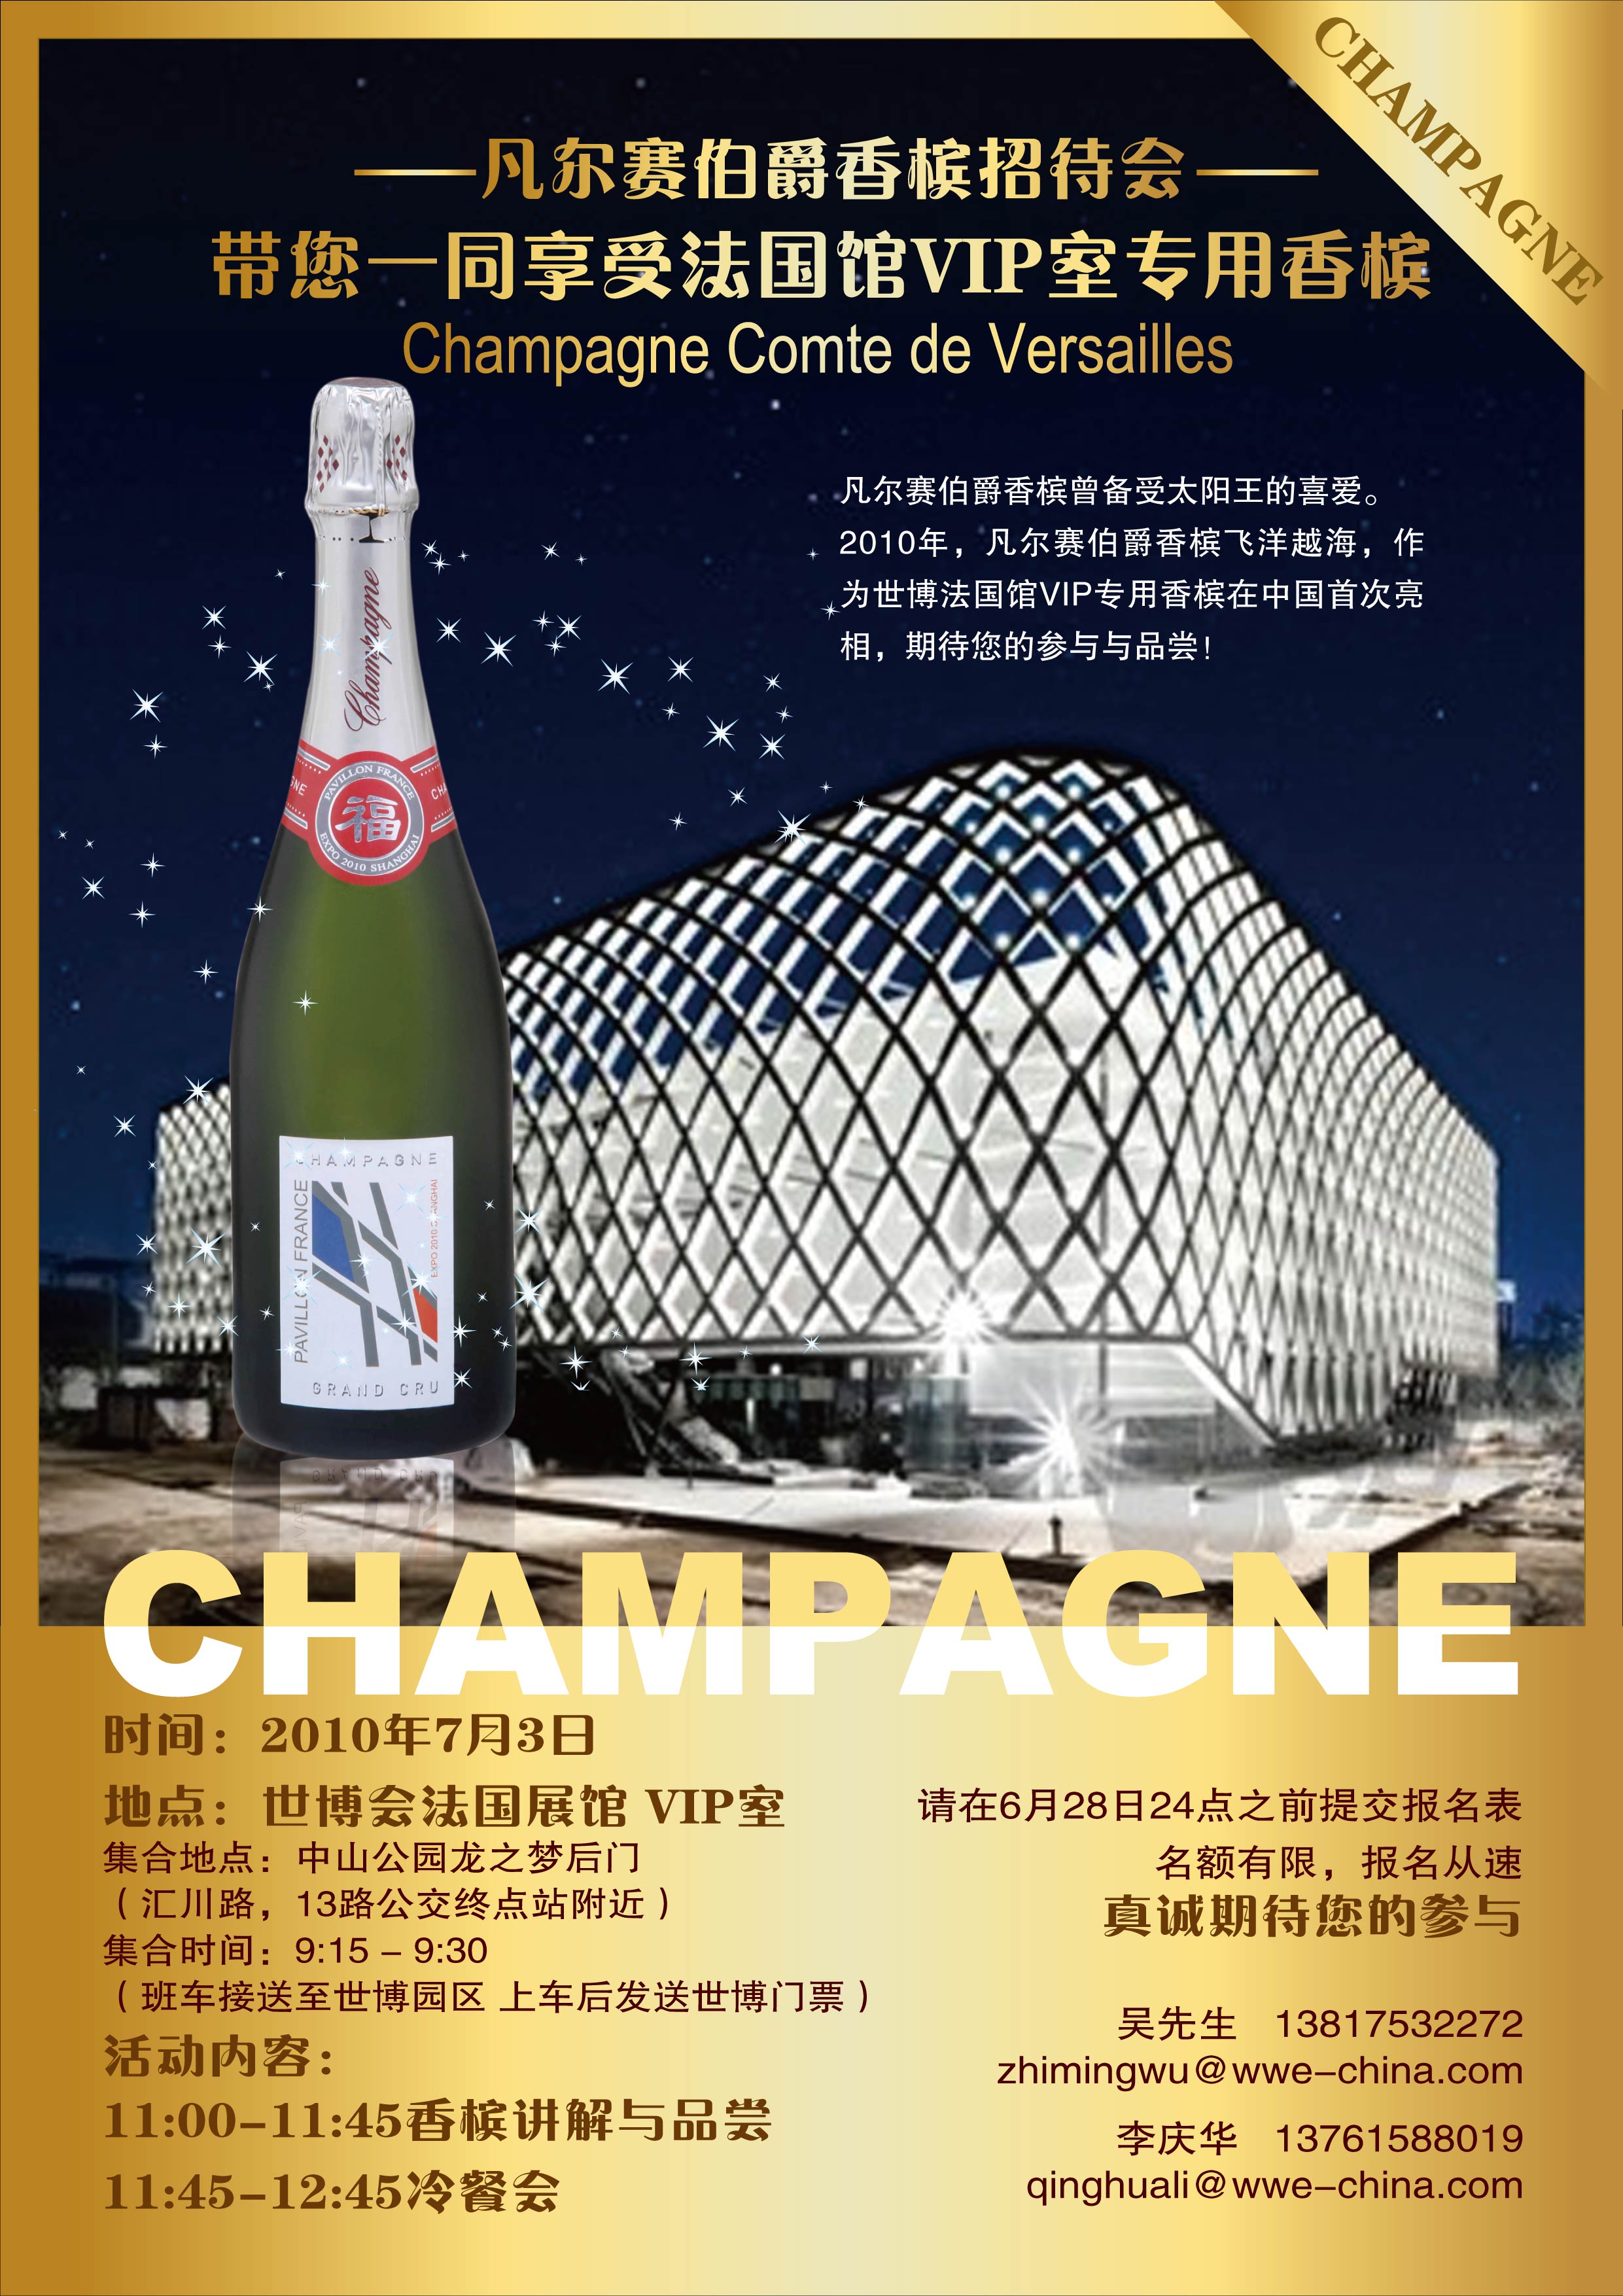 名酒沙龙诚意邀请您参加世博会法国馆VIP专用香槟招待会